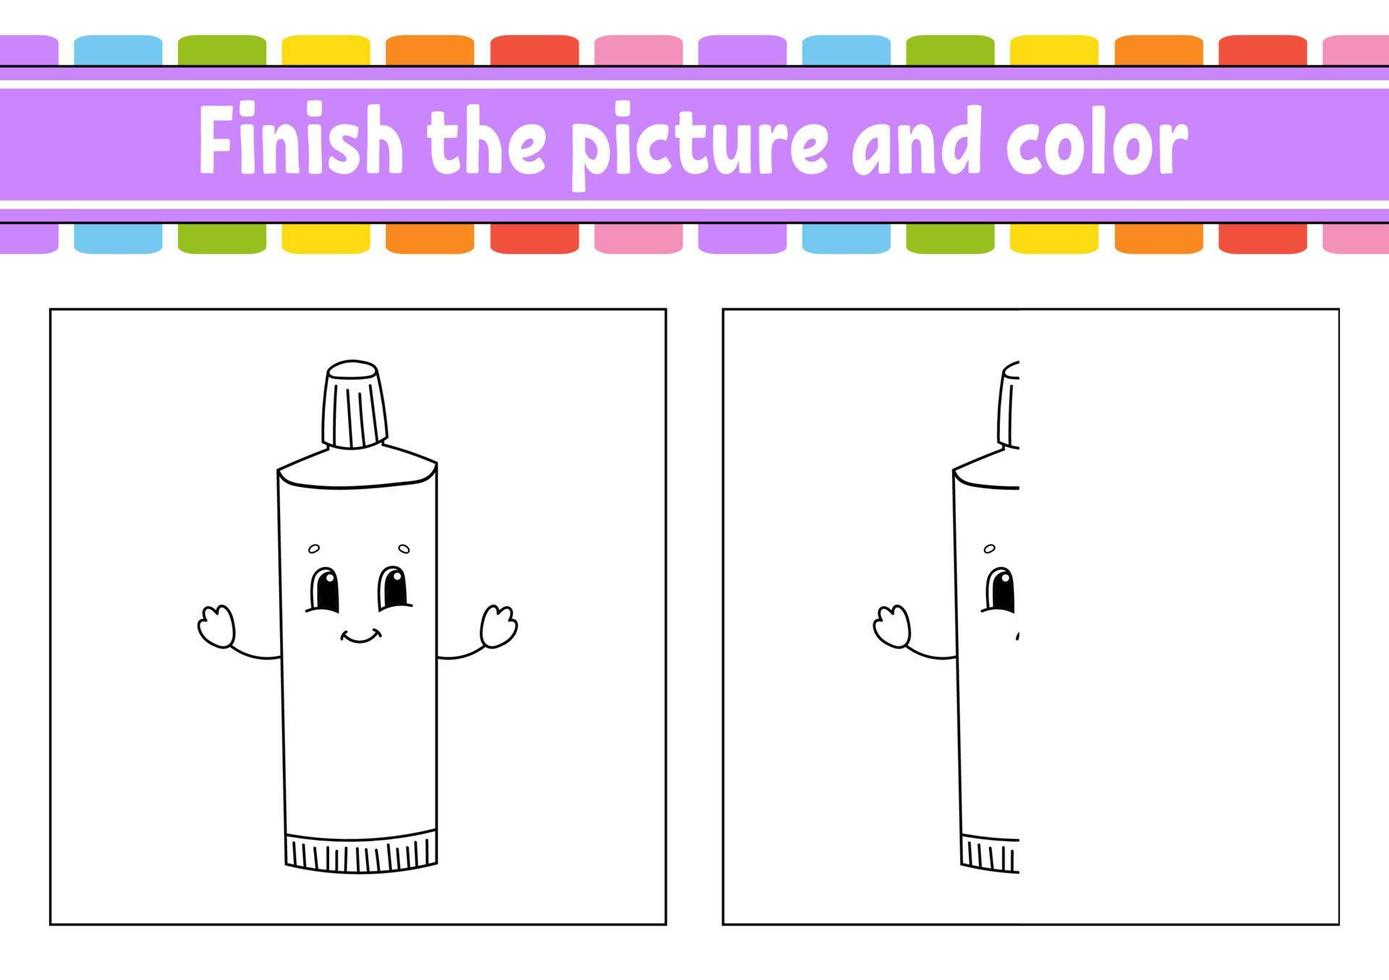 Termine la imagen y coloree. personaje de dibujos animados aislado sobre fondo blanco. para la educación de los niños. hoja de trabajo de actividad. vector